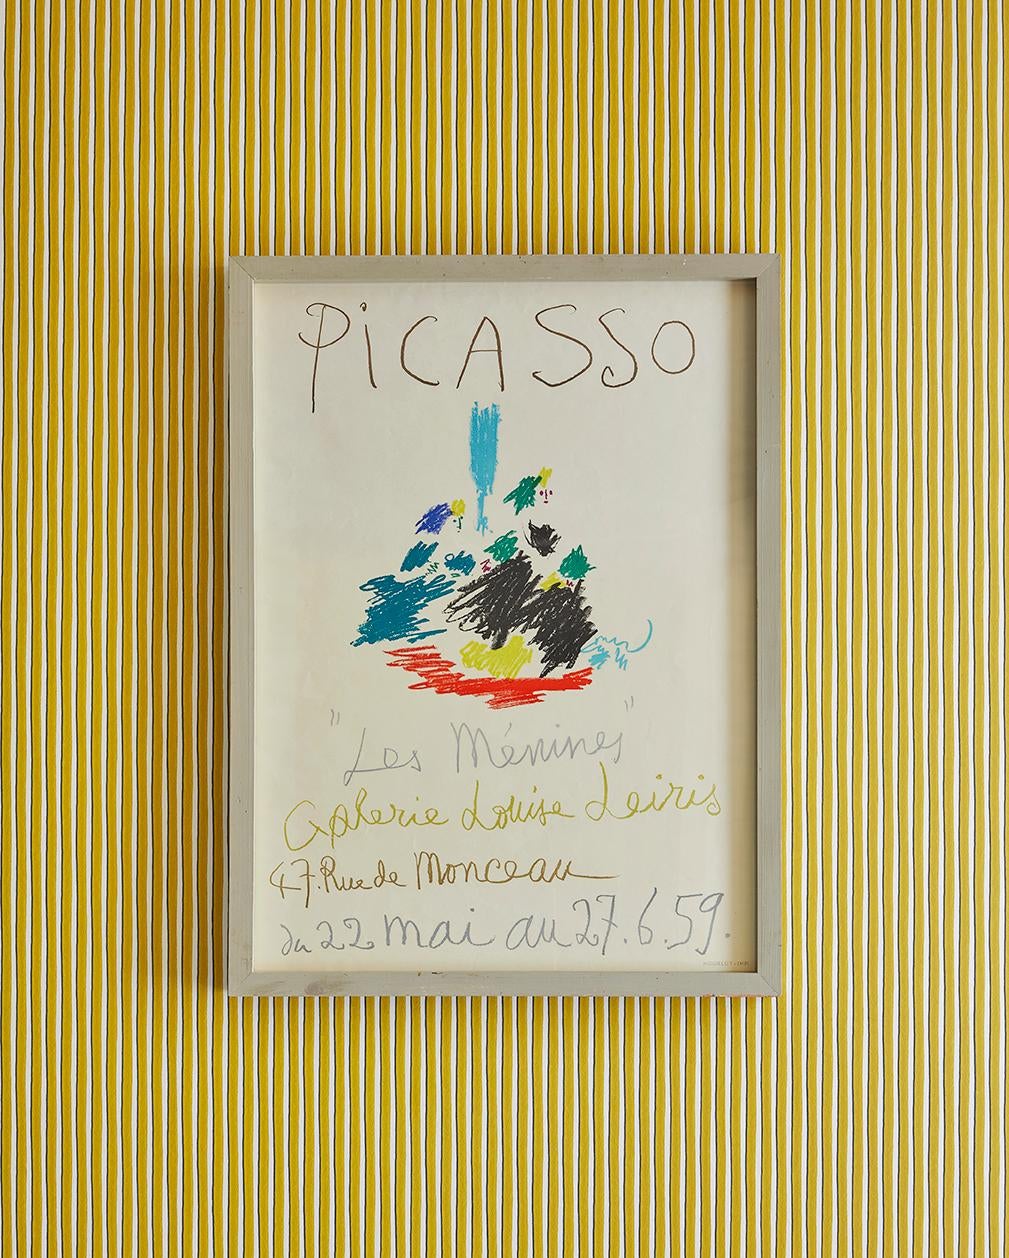 Pablo Picasso
France, 1959

“Picasso Les Ménines” Galerie Leiris. Vintage exhibition poster.

Measures: H 70 x W 51.5 x D 3.5 cm.

 